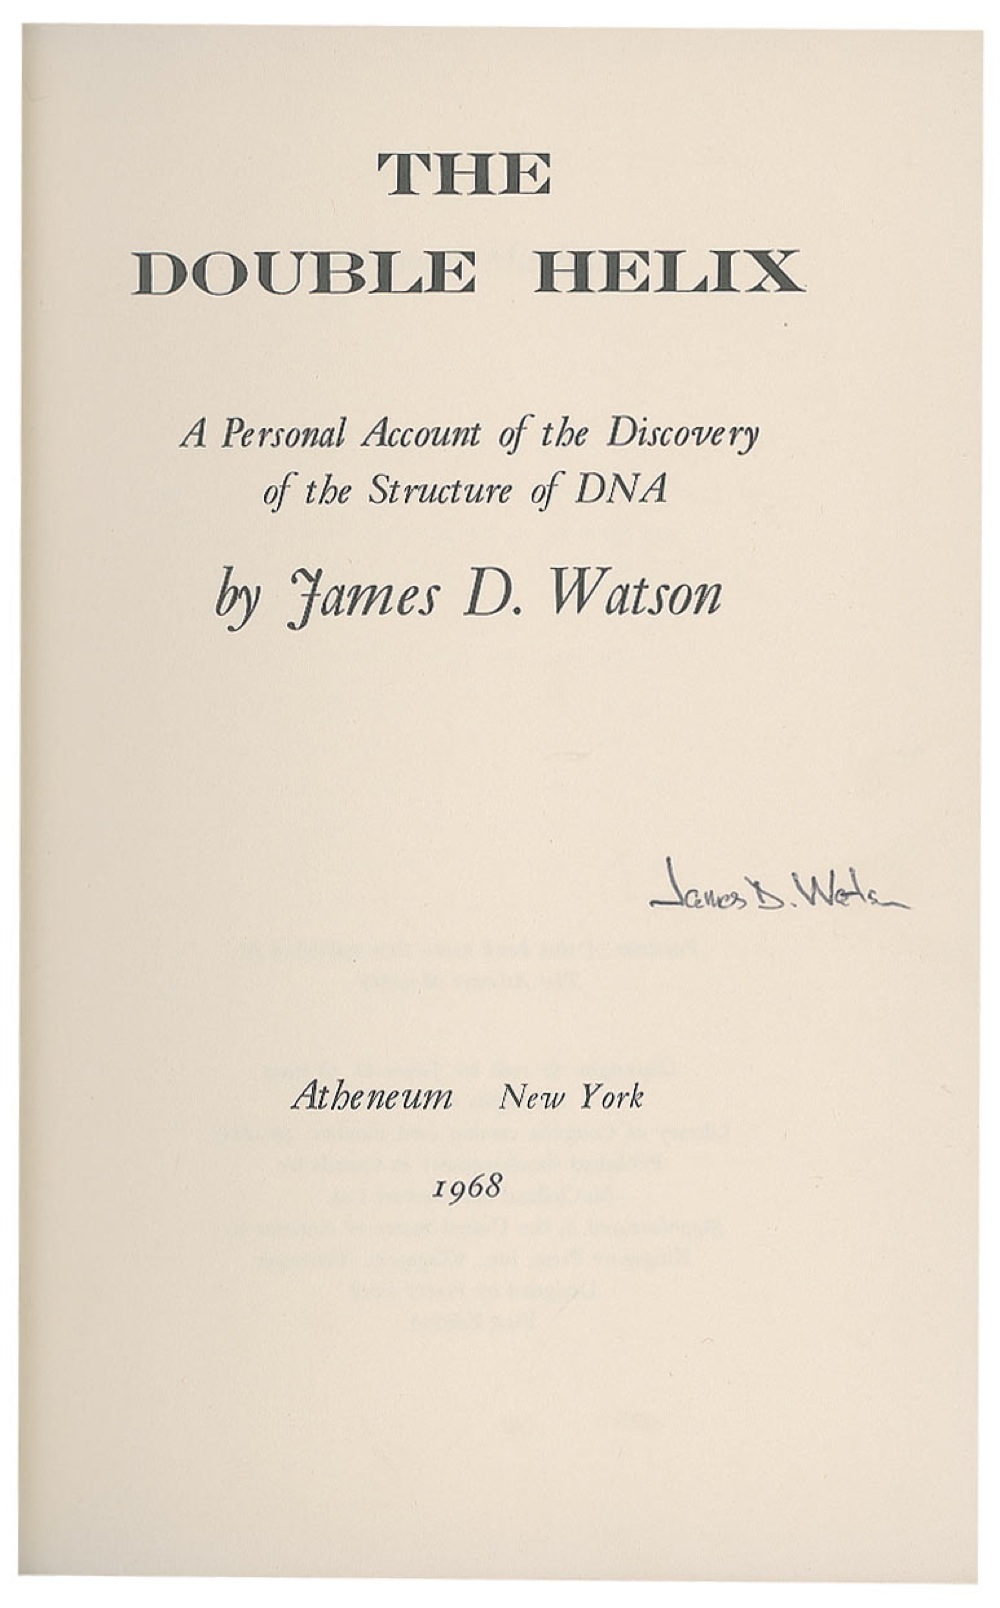 Lot #208 DNA: James D. Watson